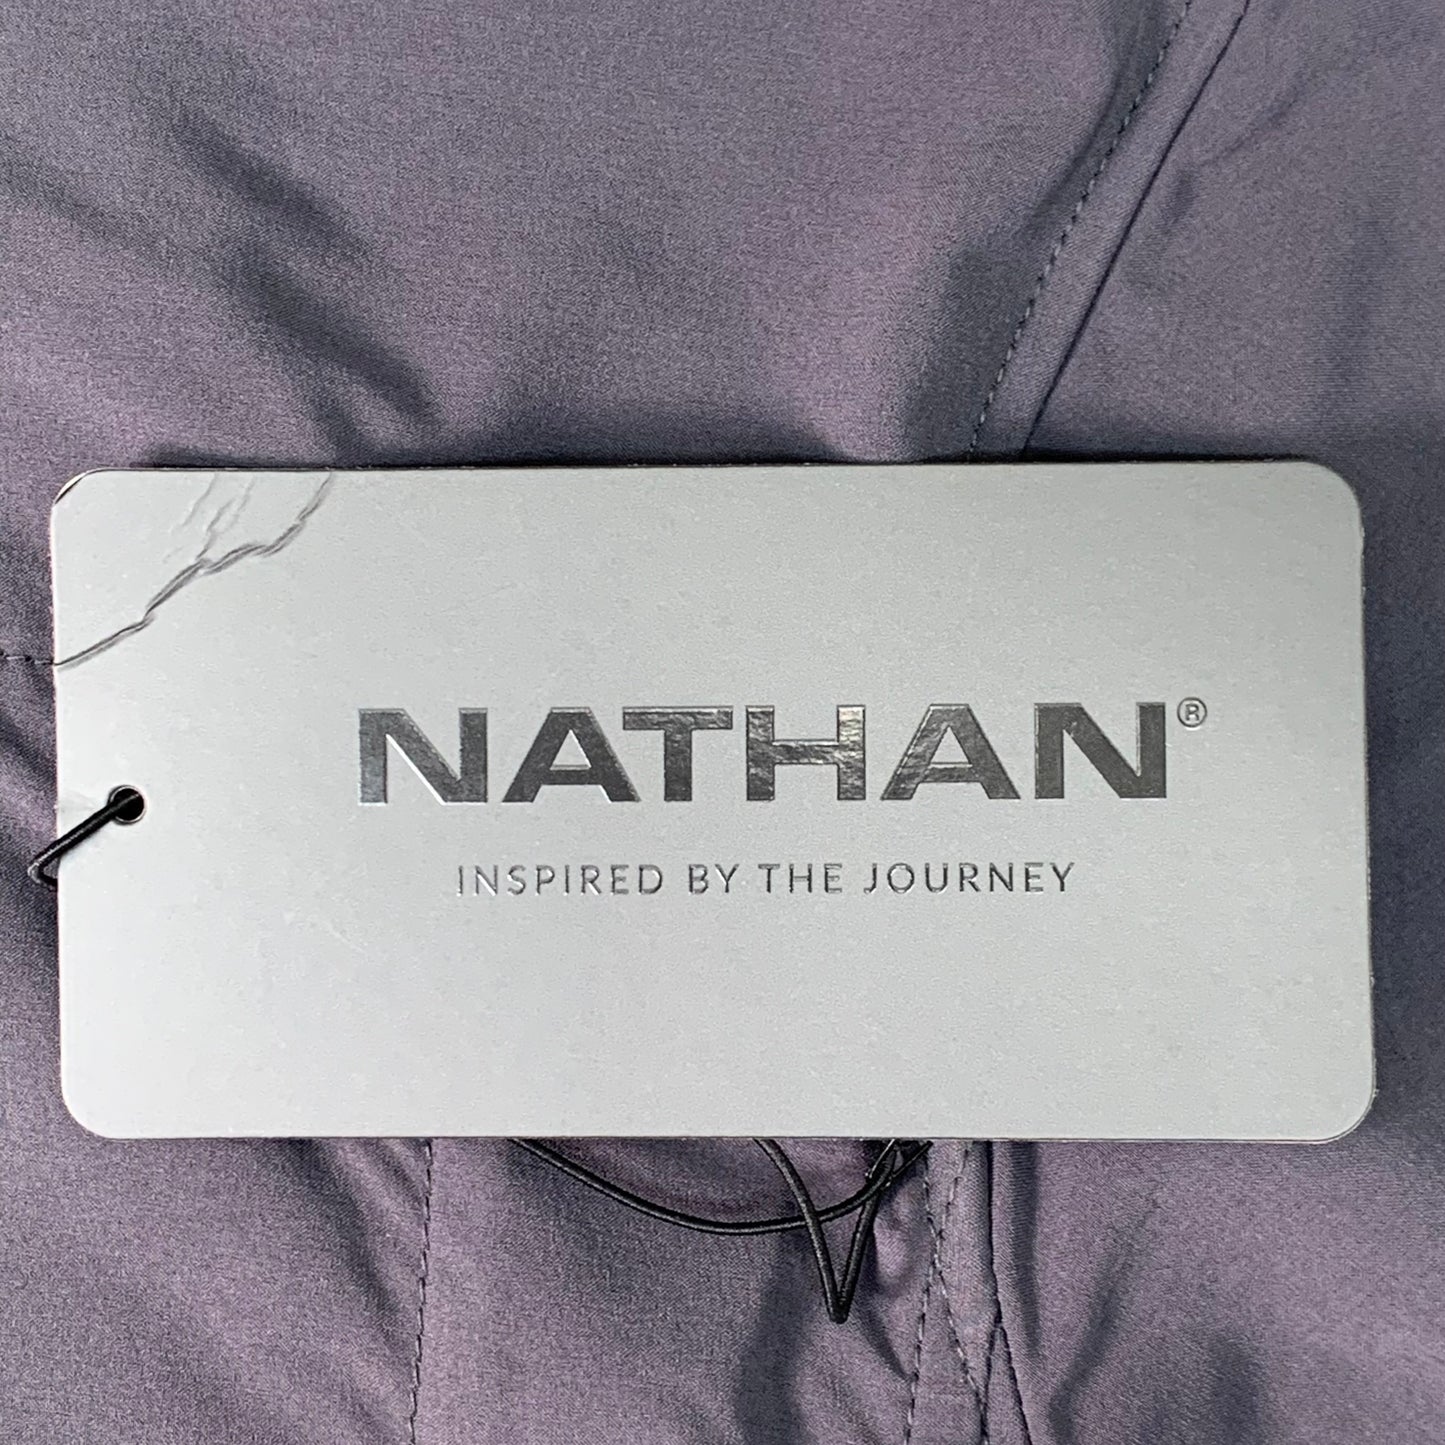 NATHAN Vamos Track Jacket Men's Sz XL Dark Charcoal NS50320-80078-XL (New)